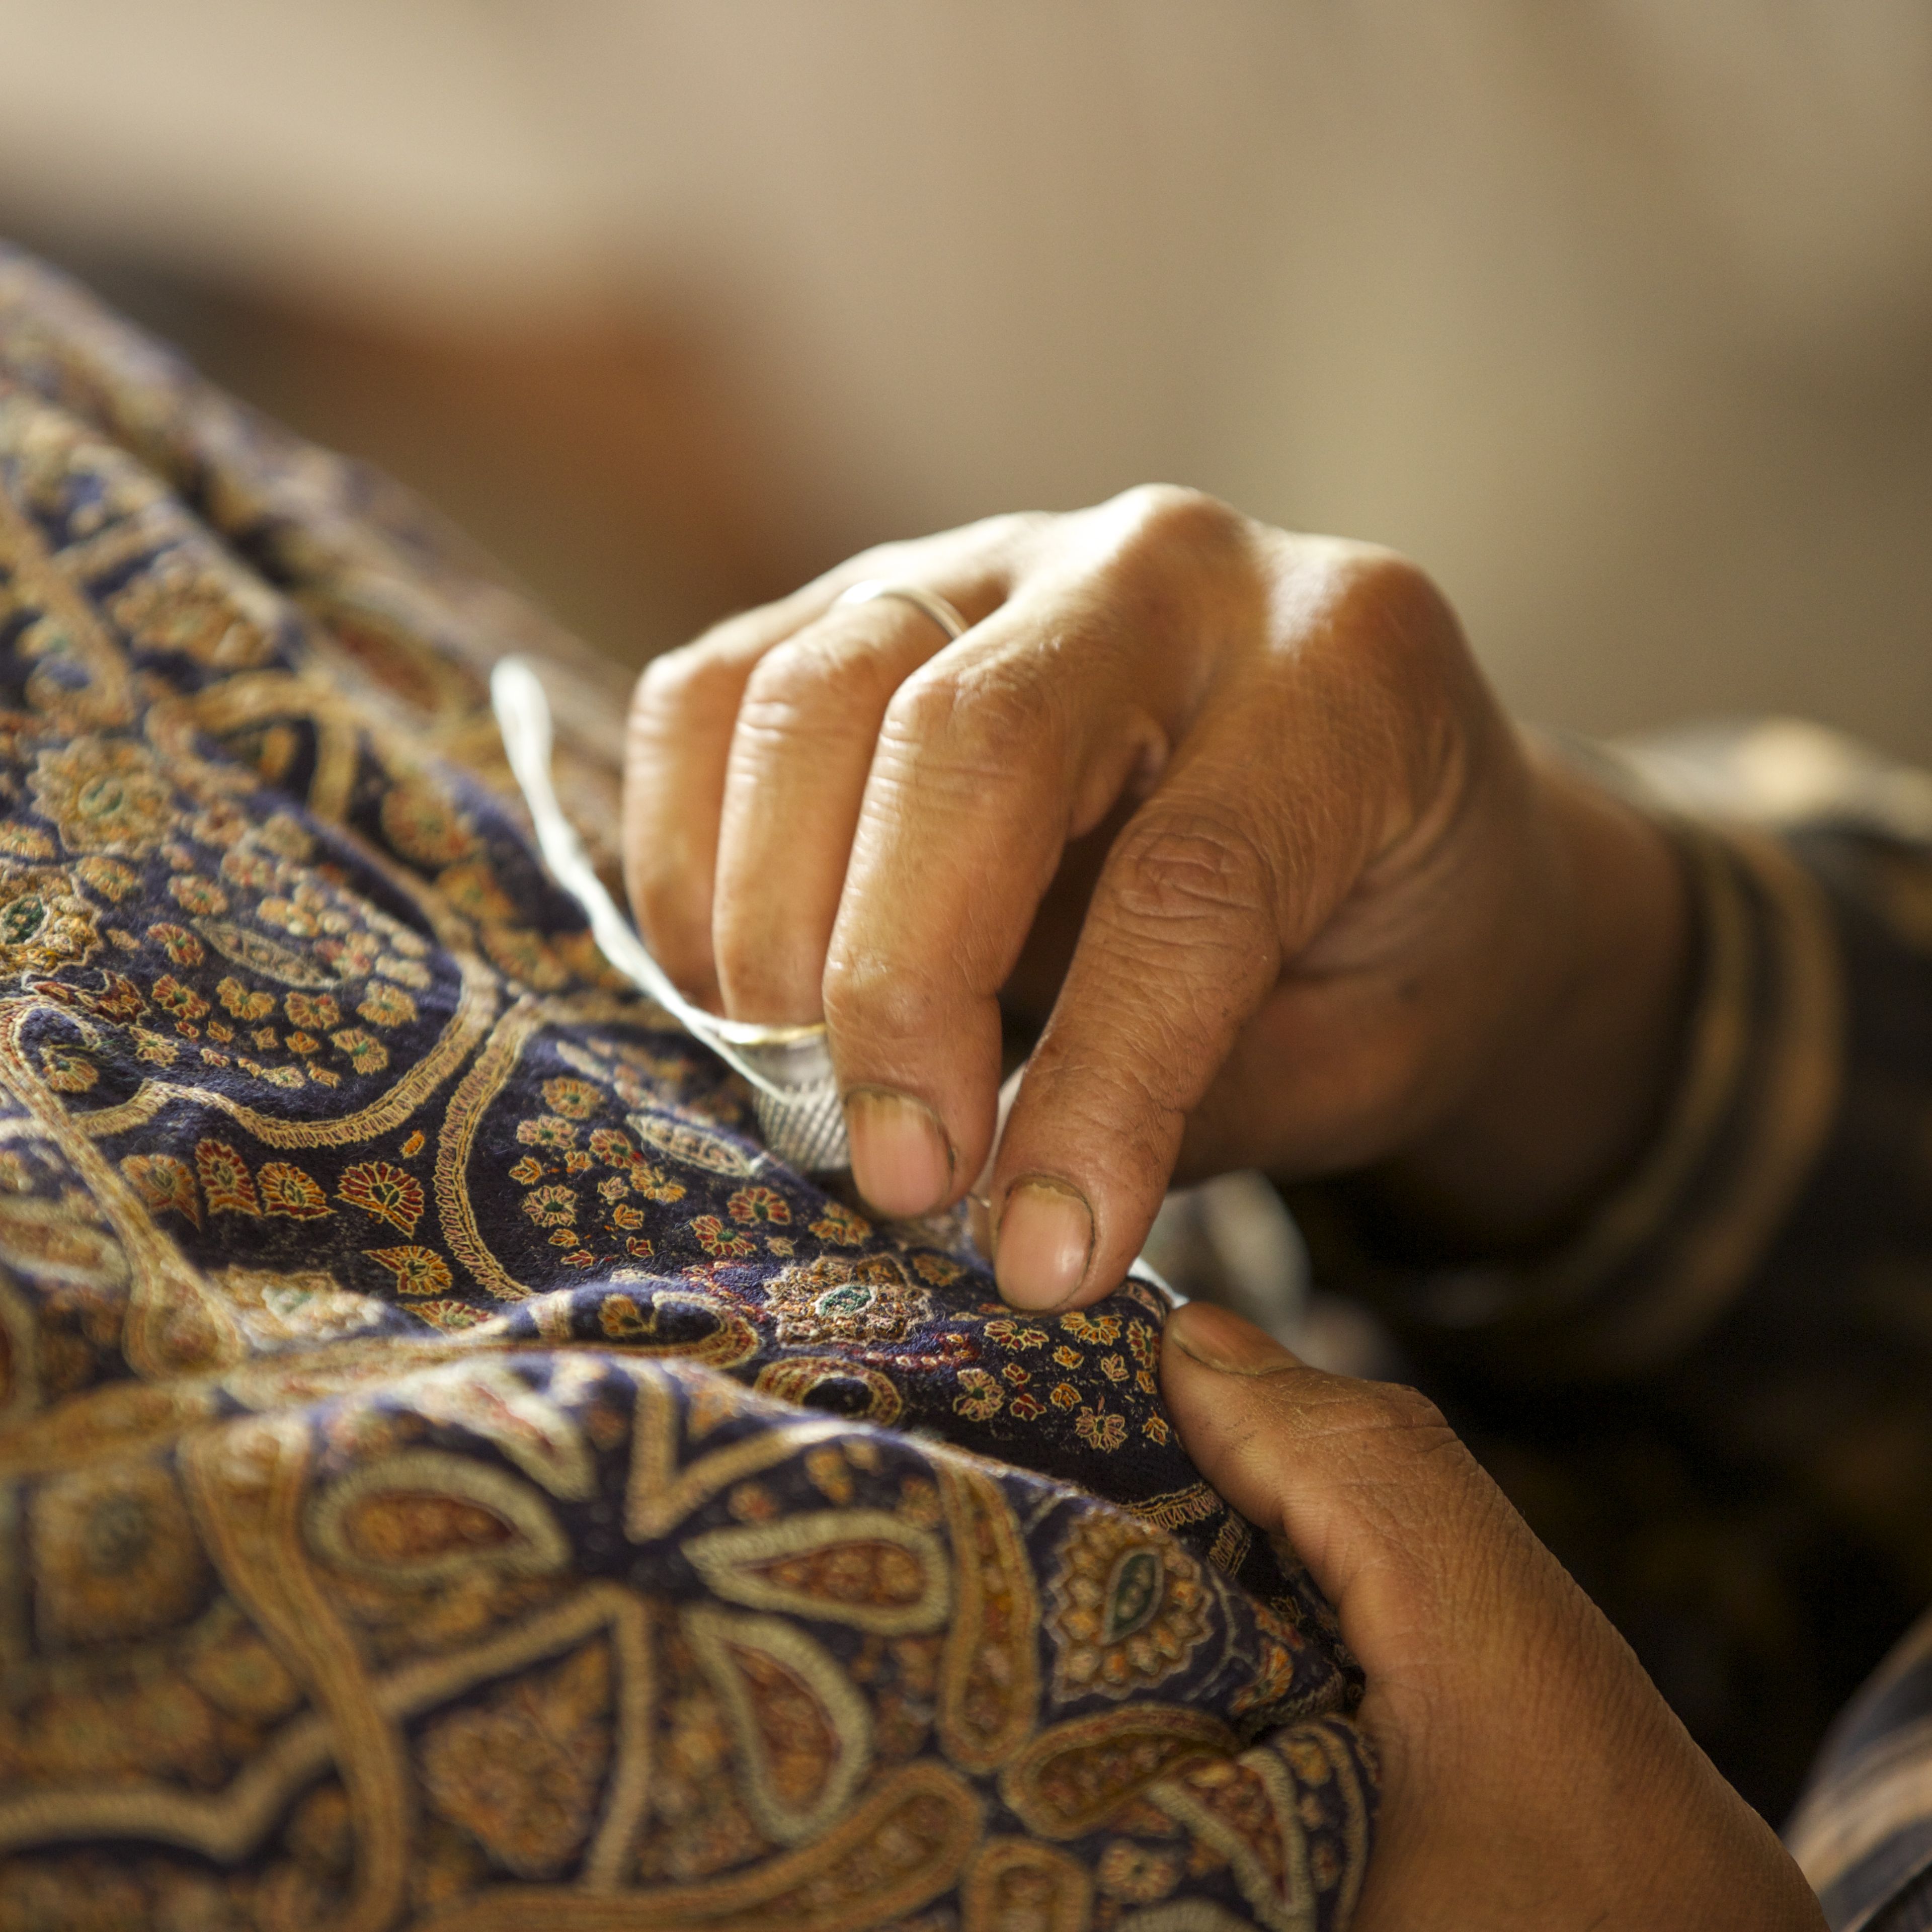 Die Pashmina kann von Hand gestickt werden, es ist eine sehr sorgfältige Kunst, die ausschließlich von Männern ausgeführt wird